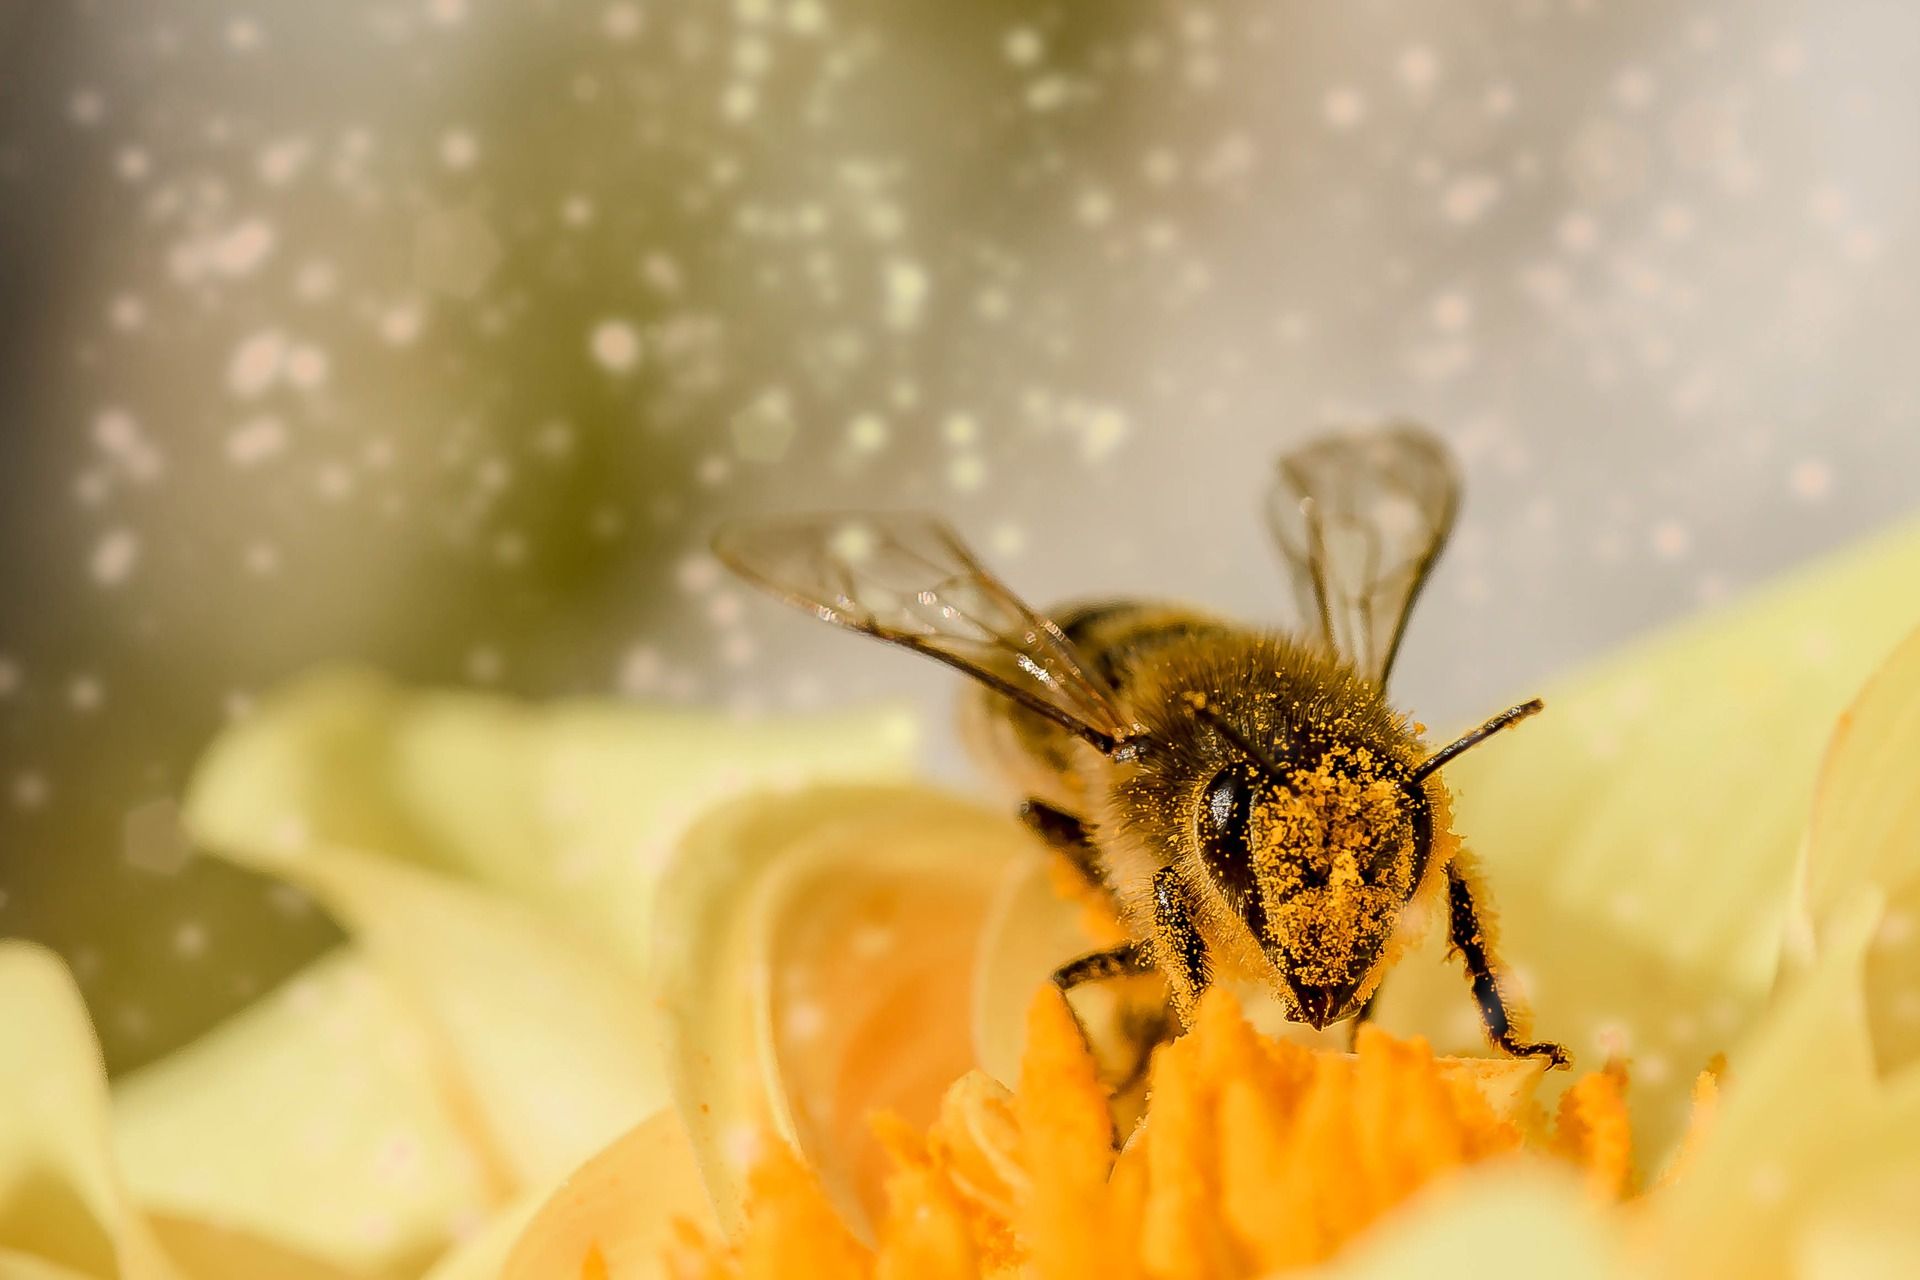 sakupljačka aktivnost pčela radilica